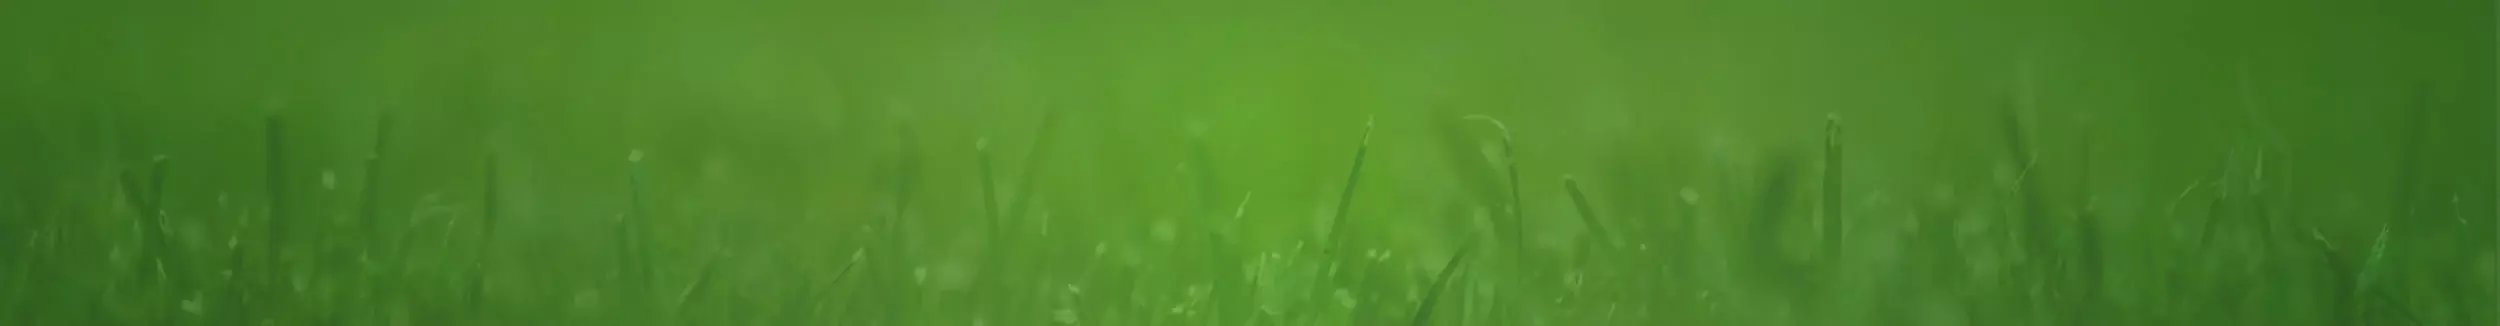 green grass header image